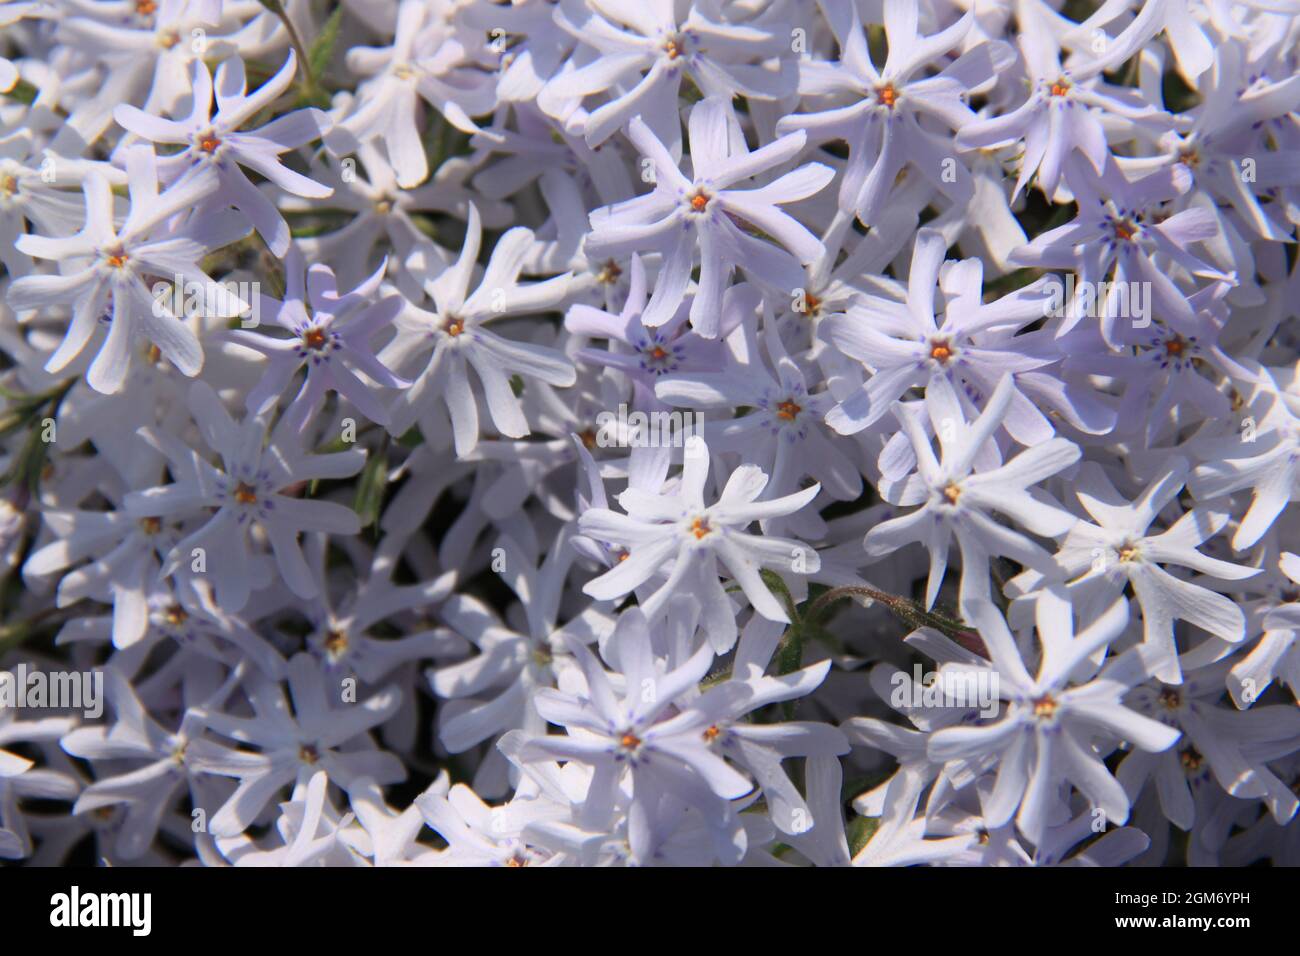 Splendid blooming phlox flowers Stock Photo